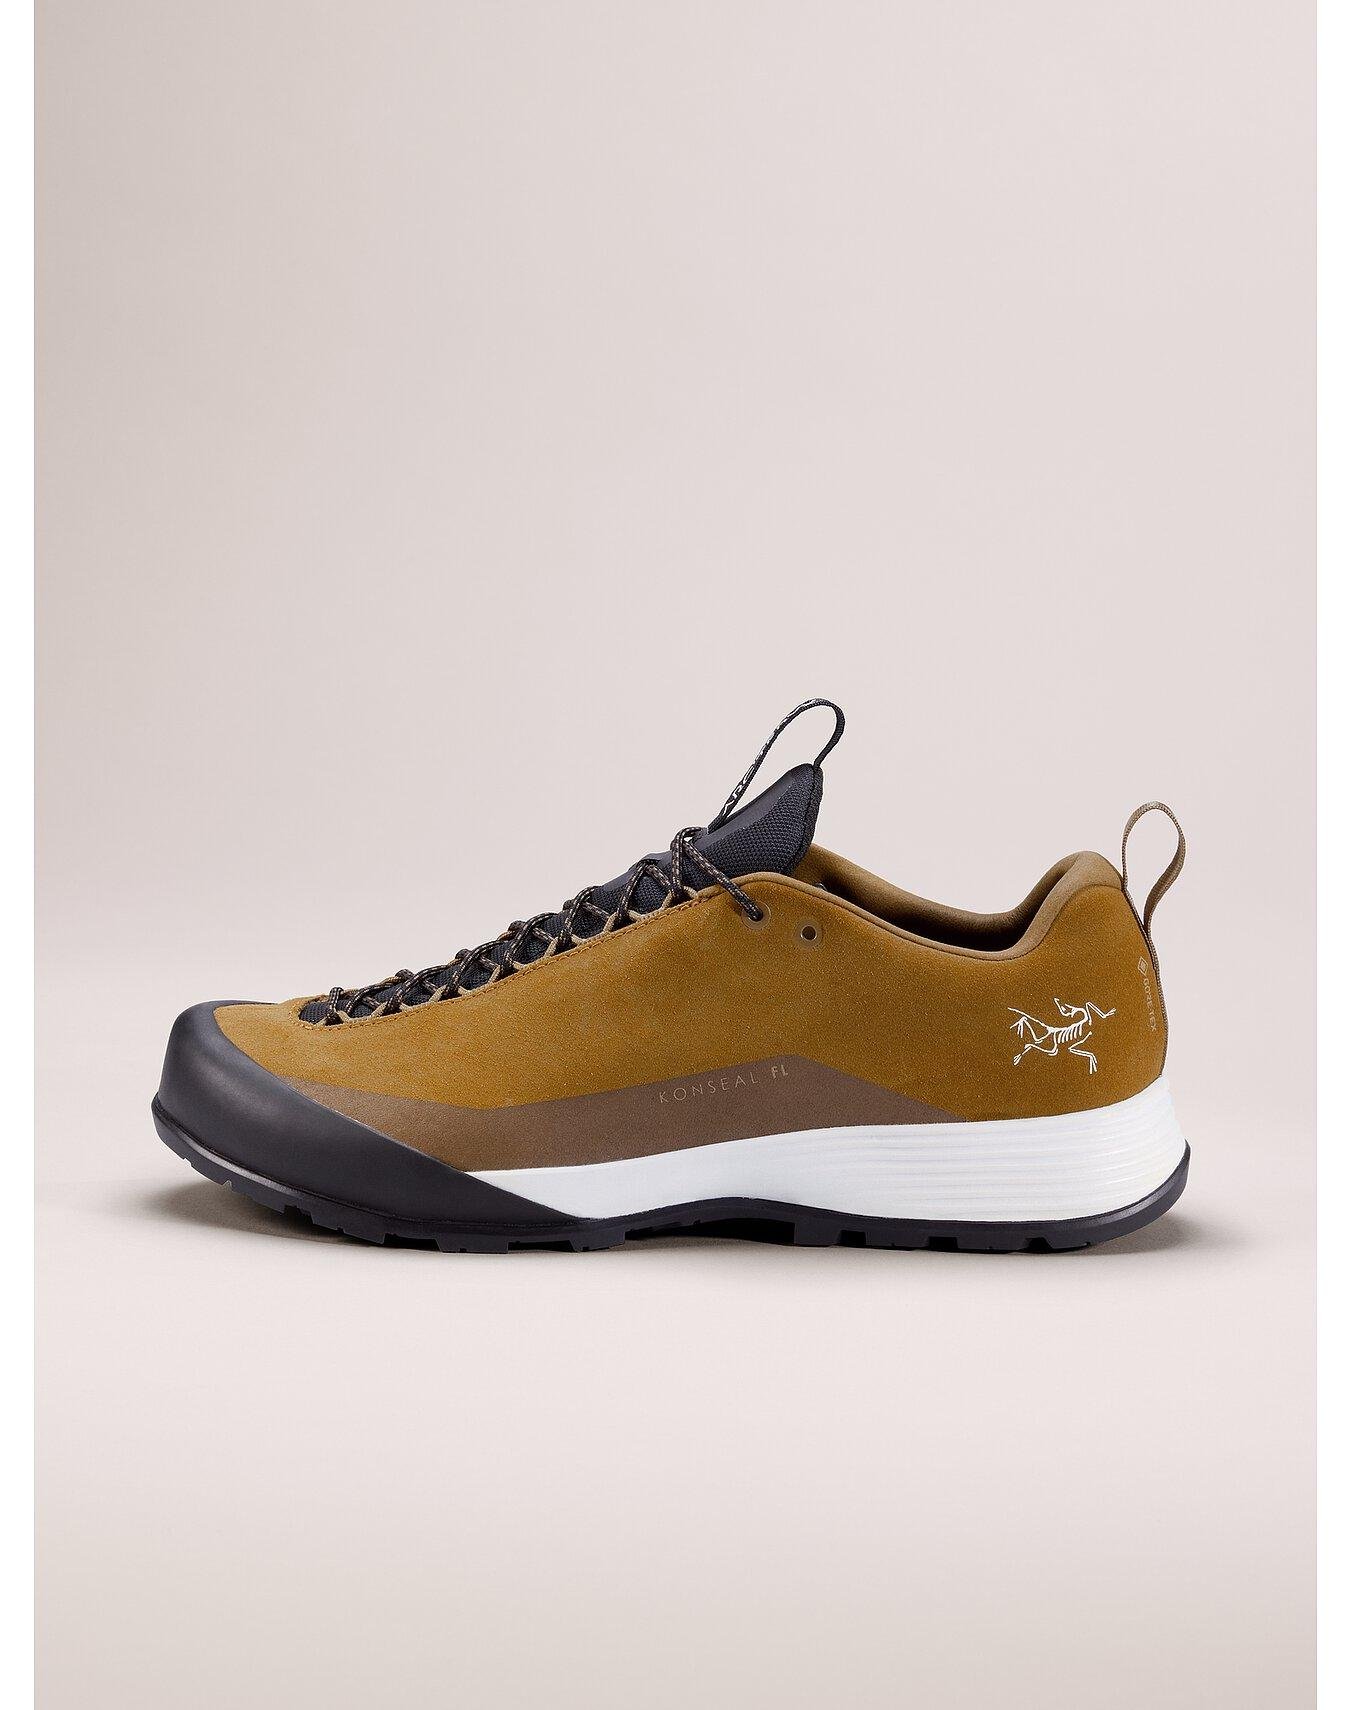 Konseal FL 2 Leather GTX Shoe Men's by ARC'TERYX